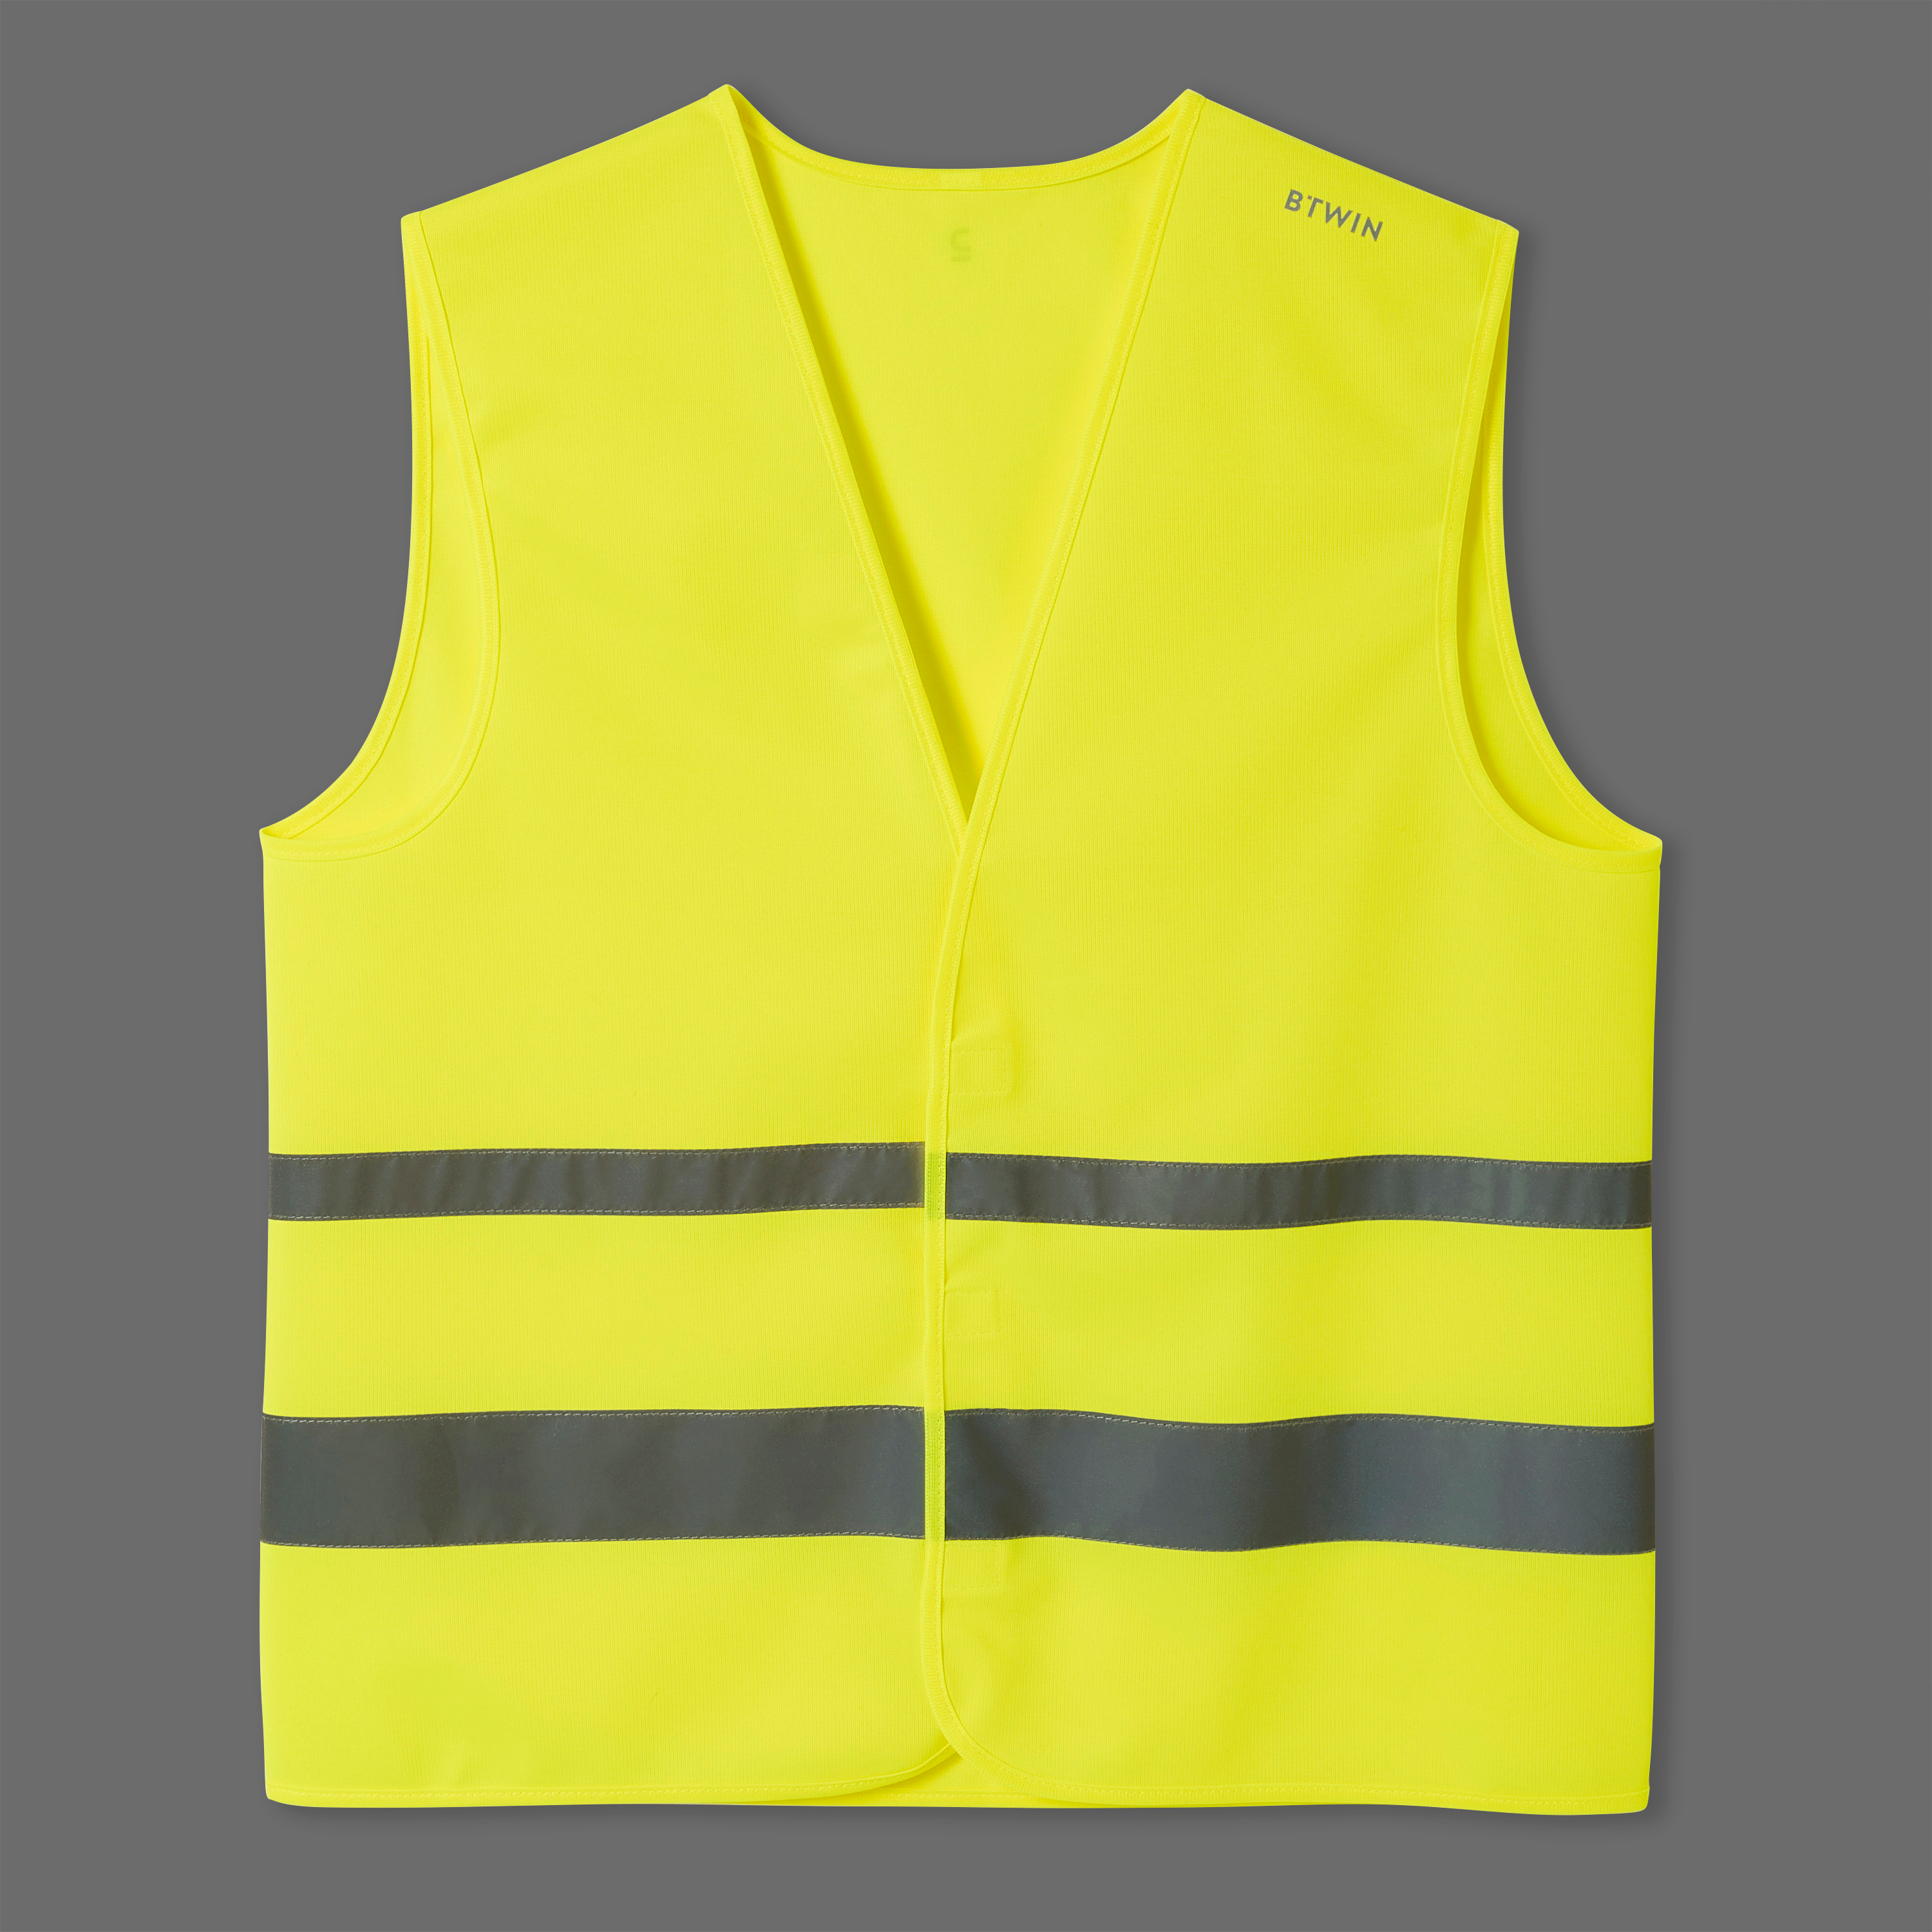 Gilet jaune haute visibilité, livraison rapide et gratuite